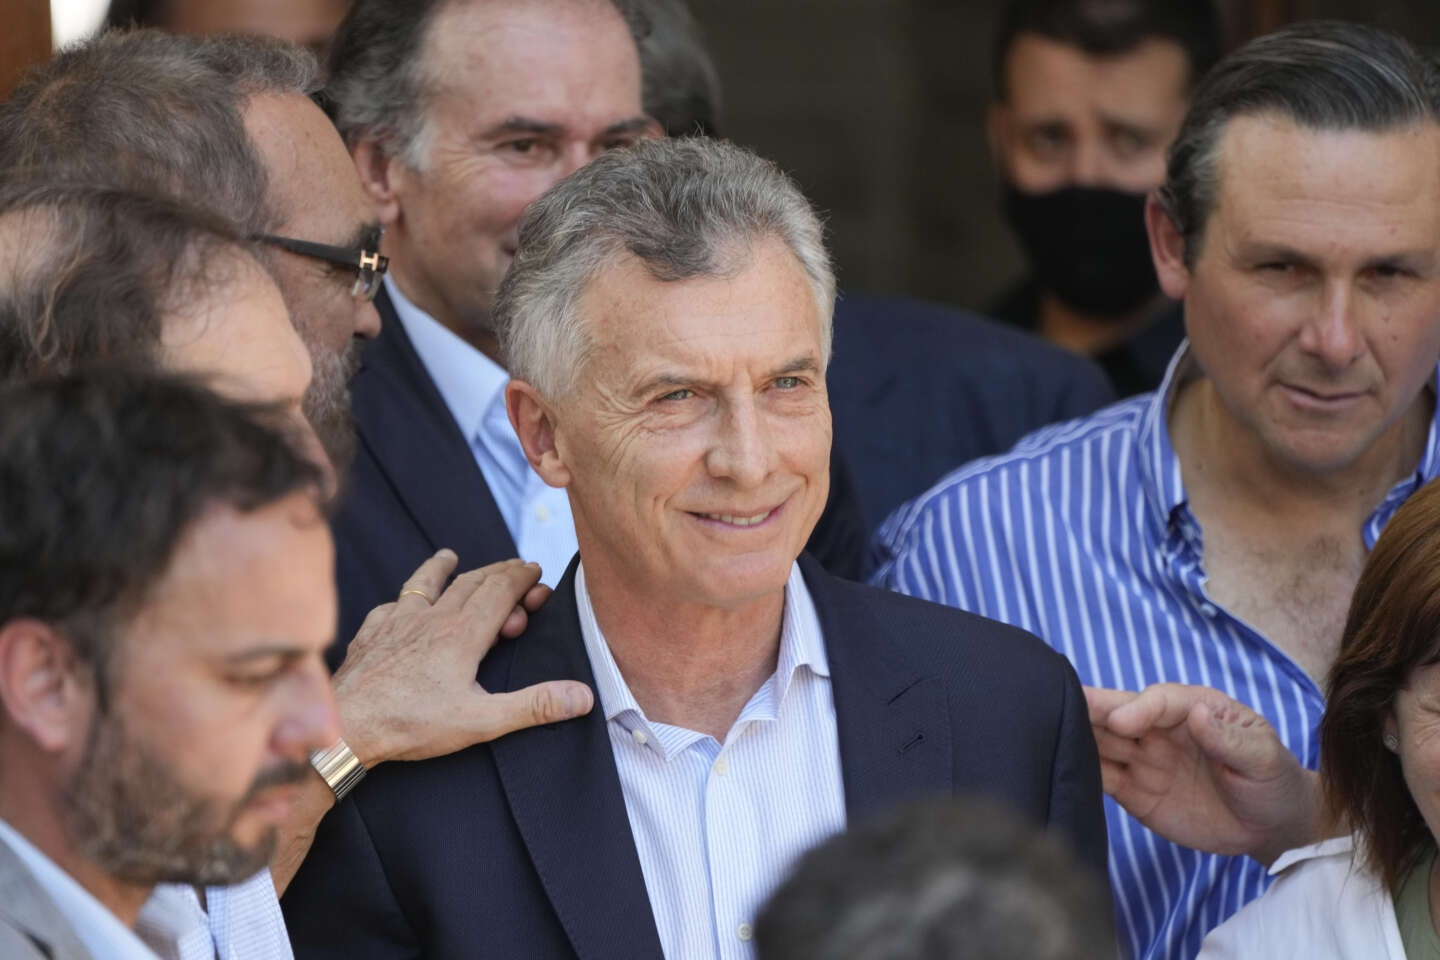 en el caso del hundimiento del submarino “San-Juan”, se retiraron los cargos del expresidente Mauricio Macri